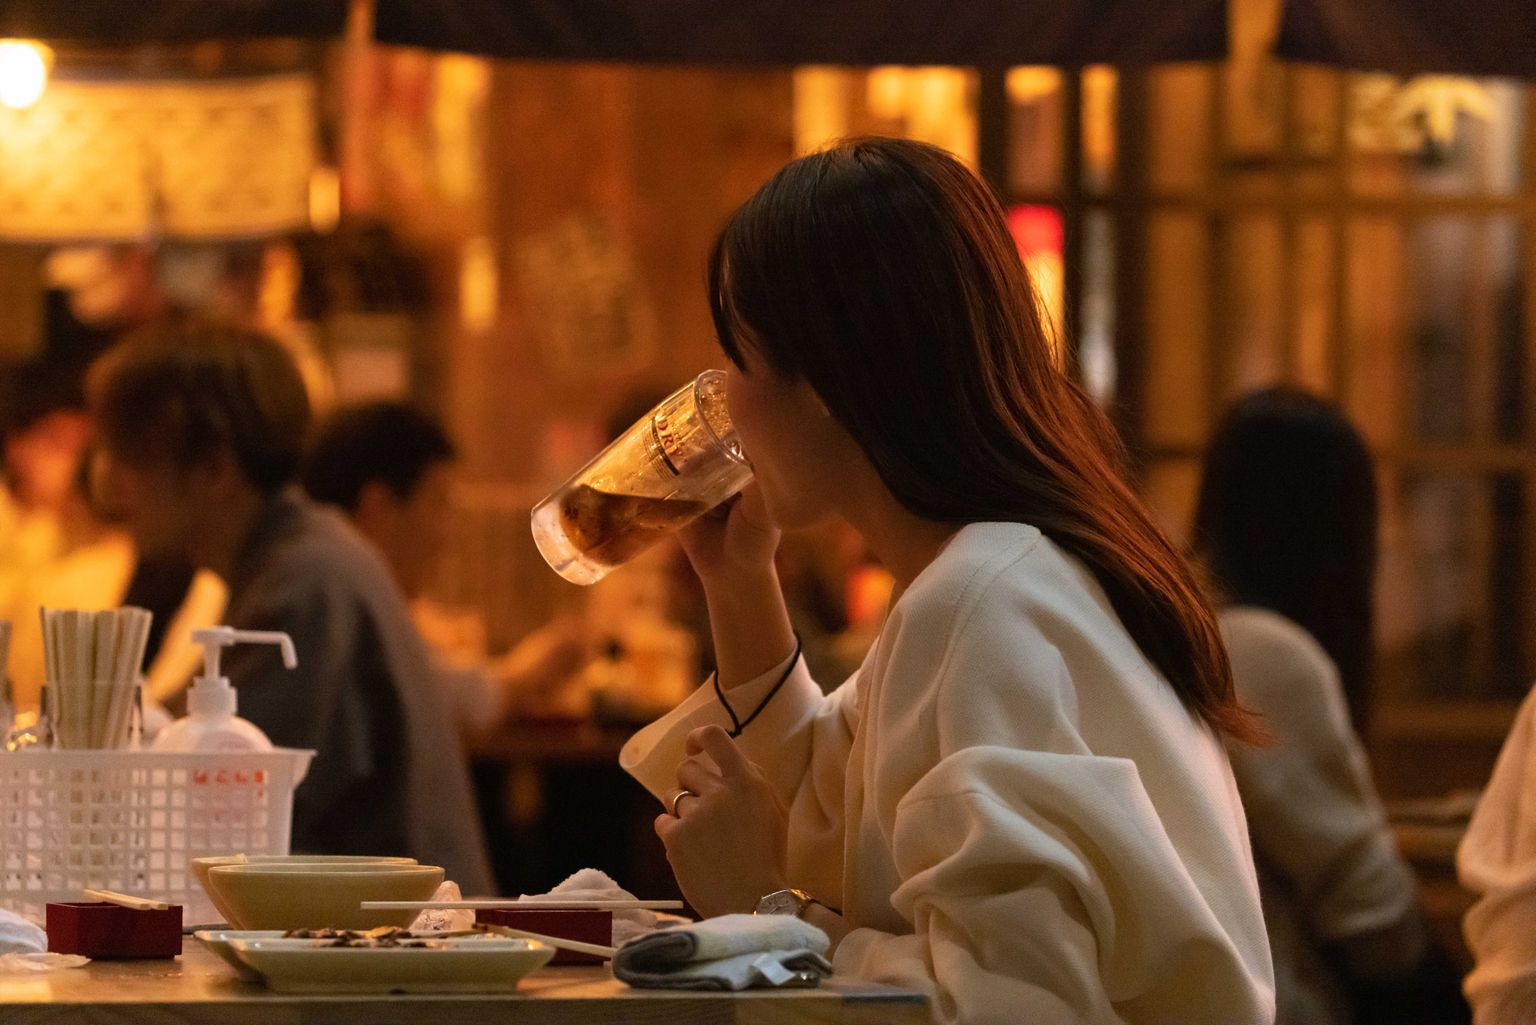 Jaapani maksuamet ärgitab noori osalema ideekonkursil, kuidas neid panna rohkem alkoholi tarbima